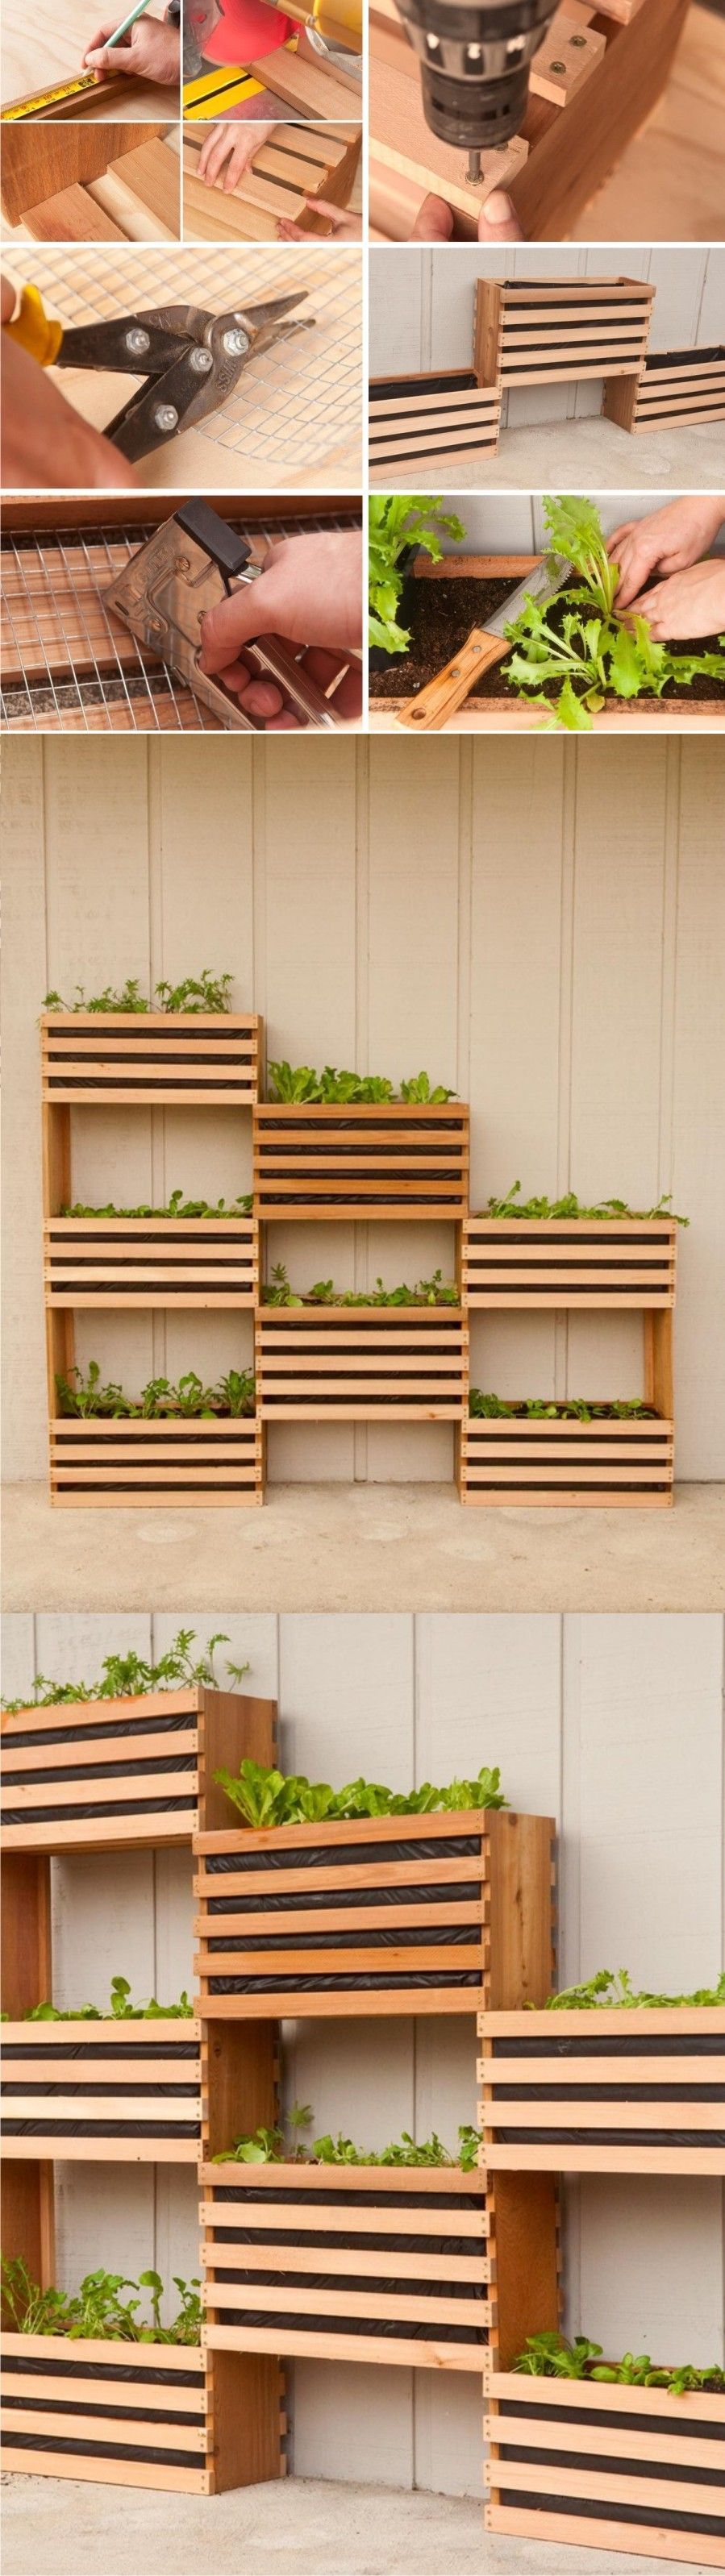 Excellent idea for indoor garden. Space-Saving Vertical Vegetable Garden